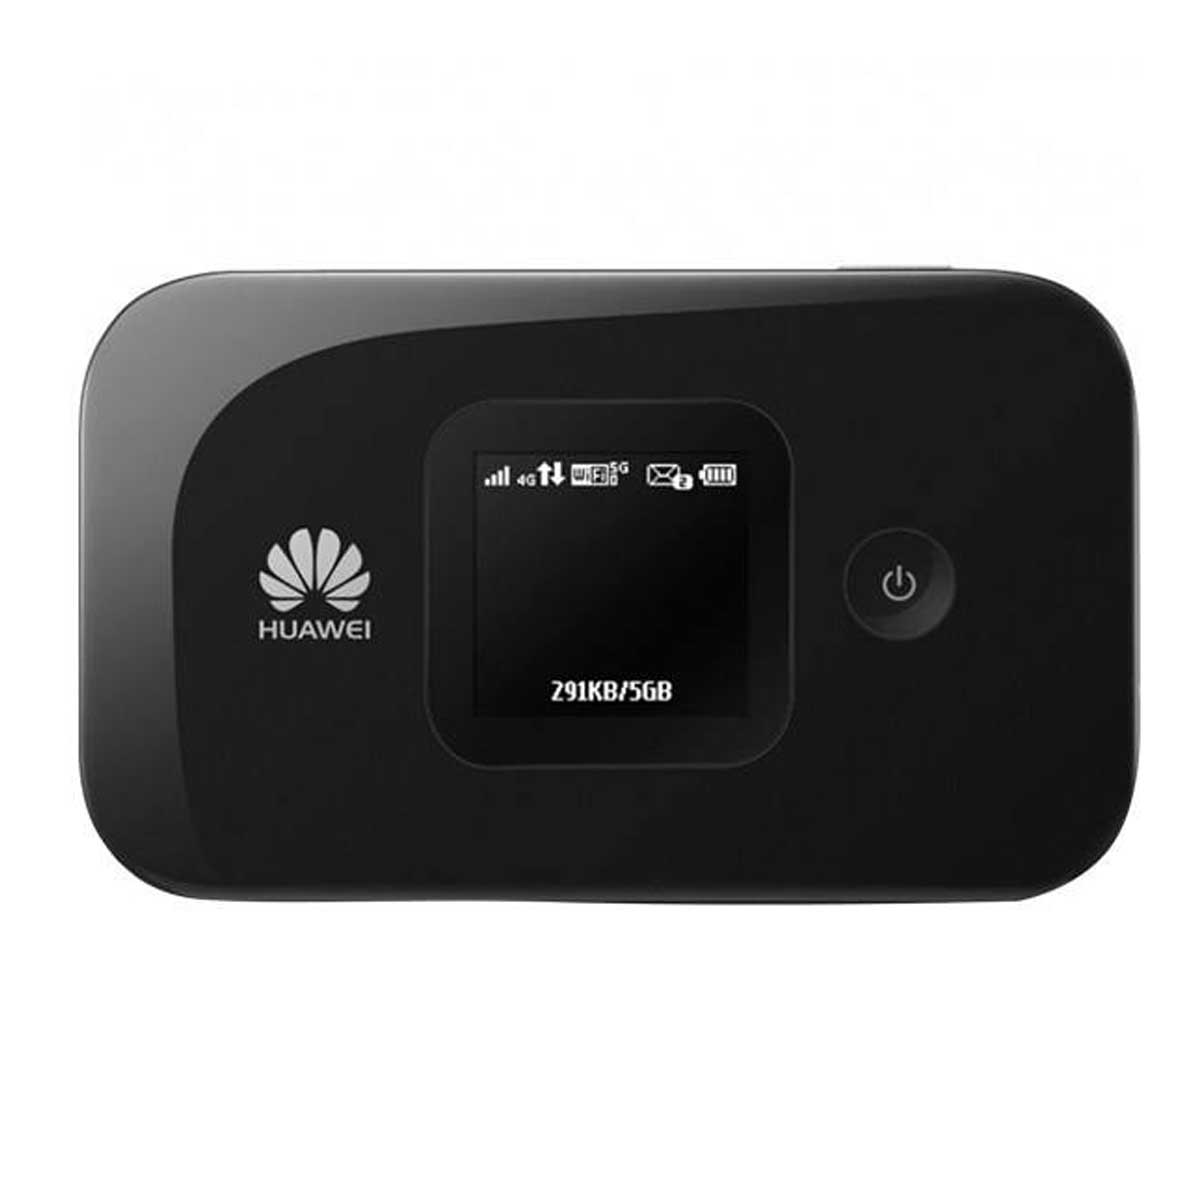 مودم 3G/4G قابل حمل هوآوی مدل E5577C به همراه سیم کارت 4.5G و 120گیگ اینترنت